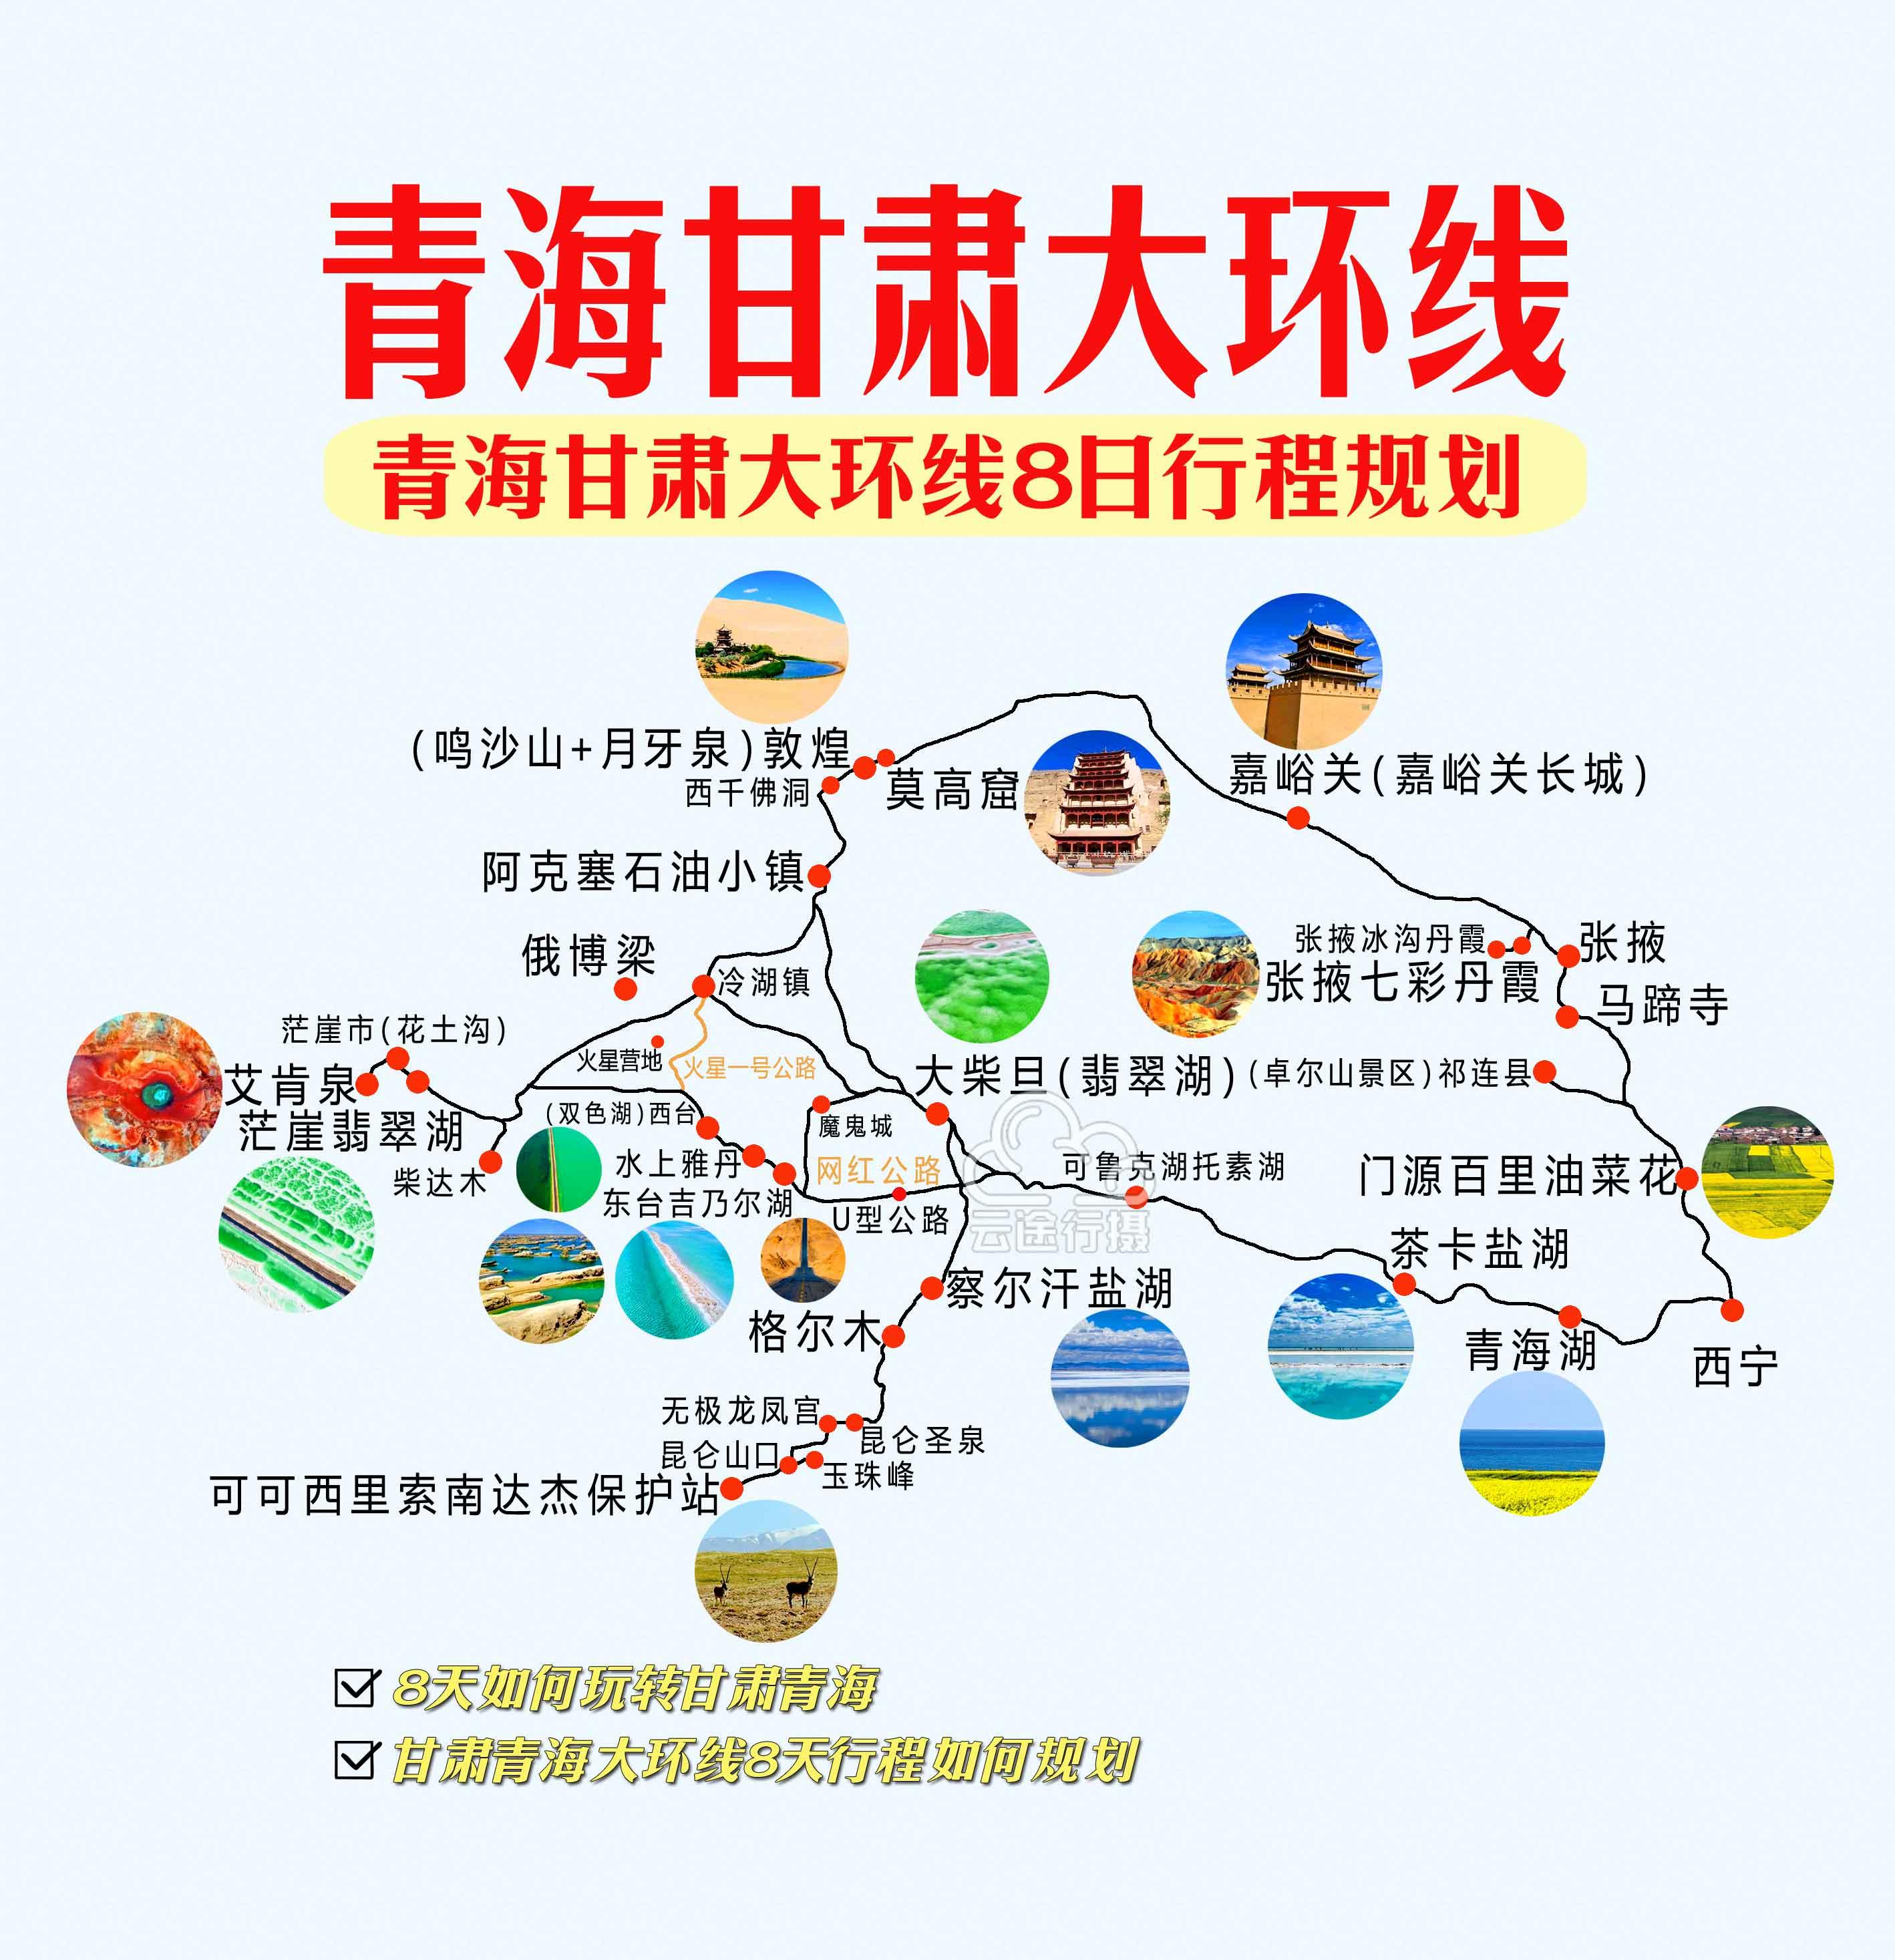 2020年中国西北环线自驾--国庆出游-西安旅游攻略-游记-去哪儿攻略